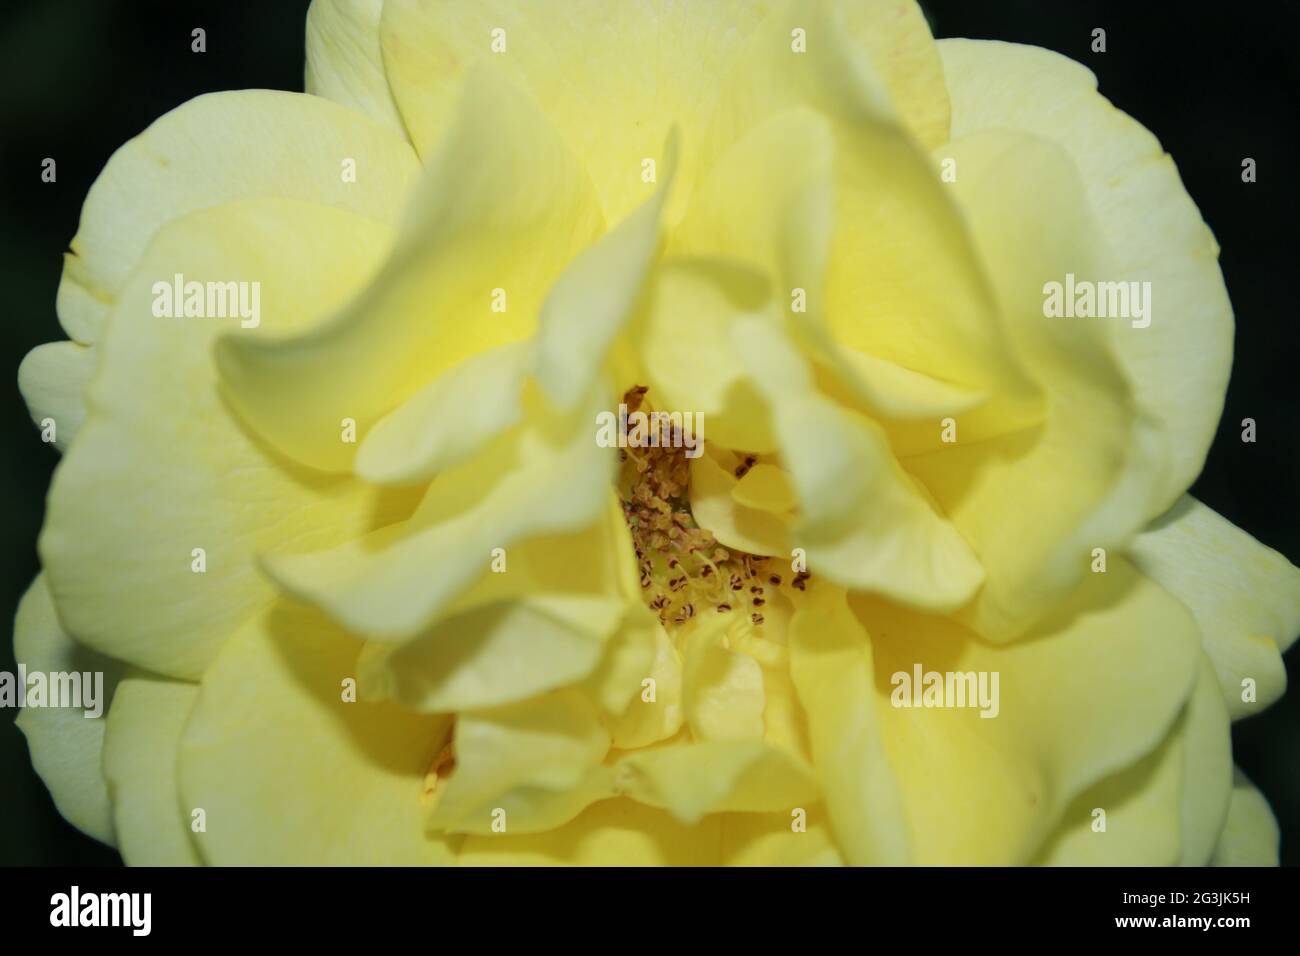 Gros plan de fleurs de rose jaune, image de rose vintage.mise au point sélective. Banque D'Images